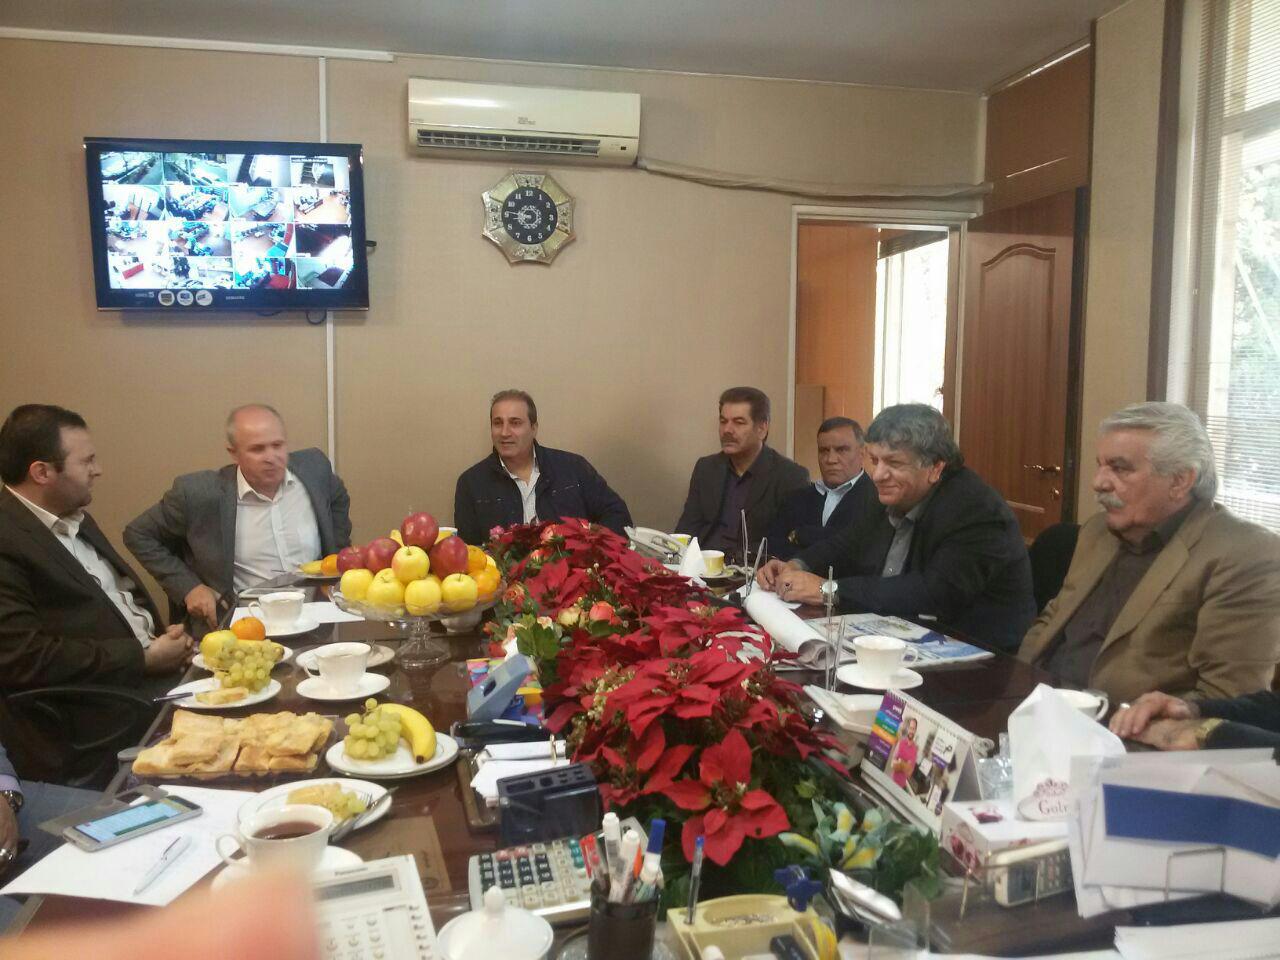 جلسه مشترک اتحادیه صنف دارندگان نمایشگاهها وفروشندگان خودروتهران با نماینده مجلس شورای اسلامی